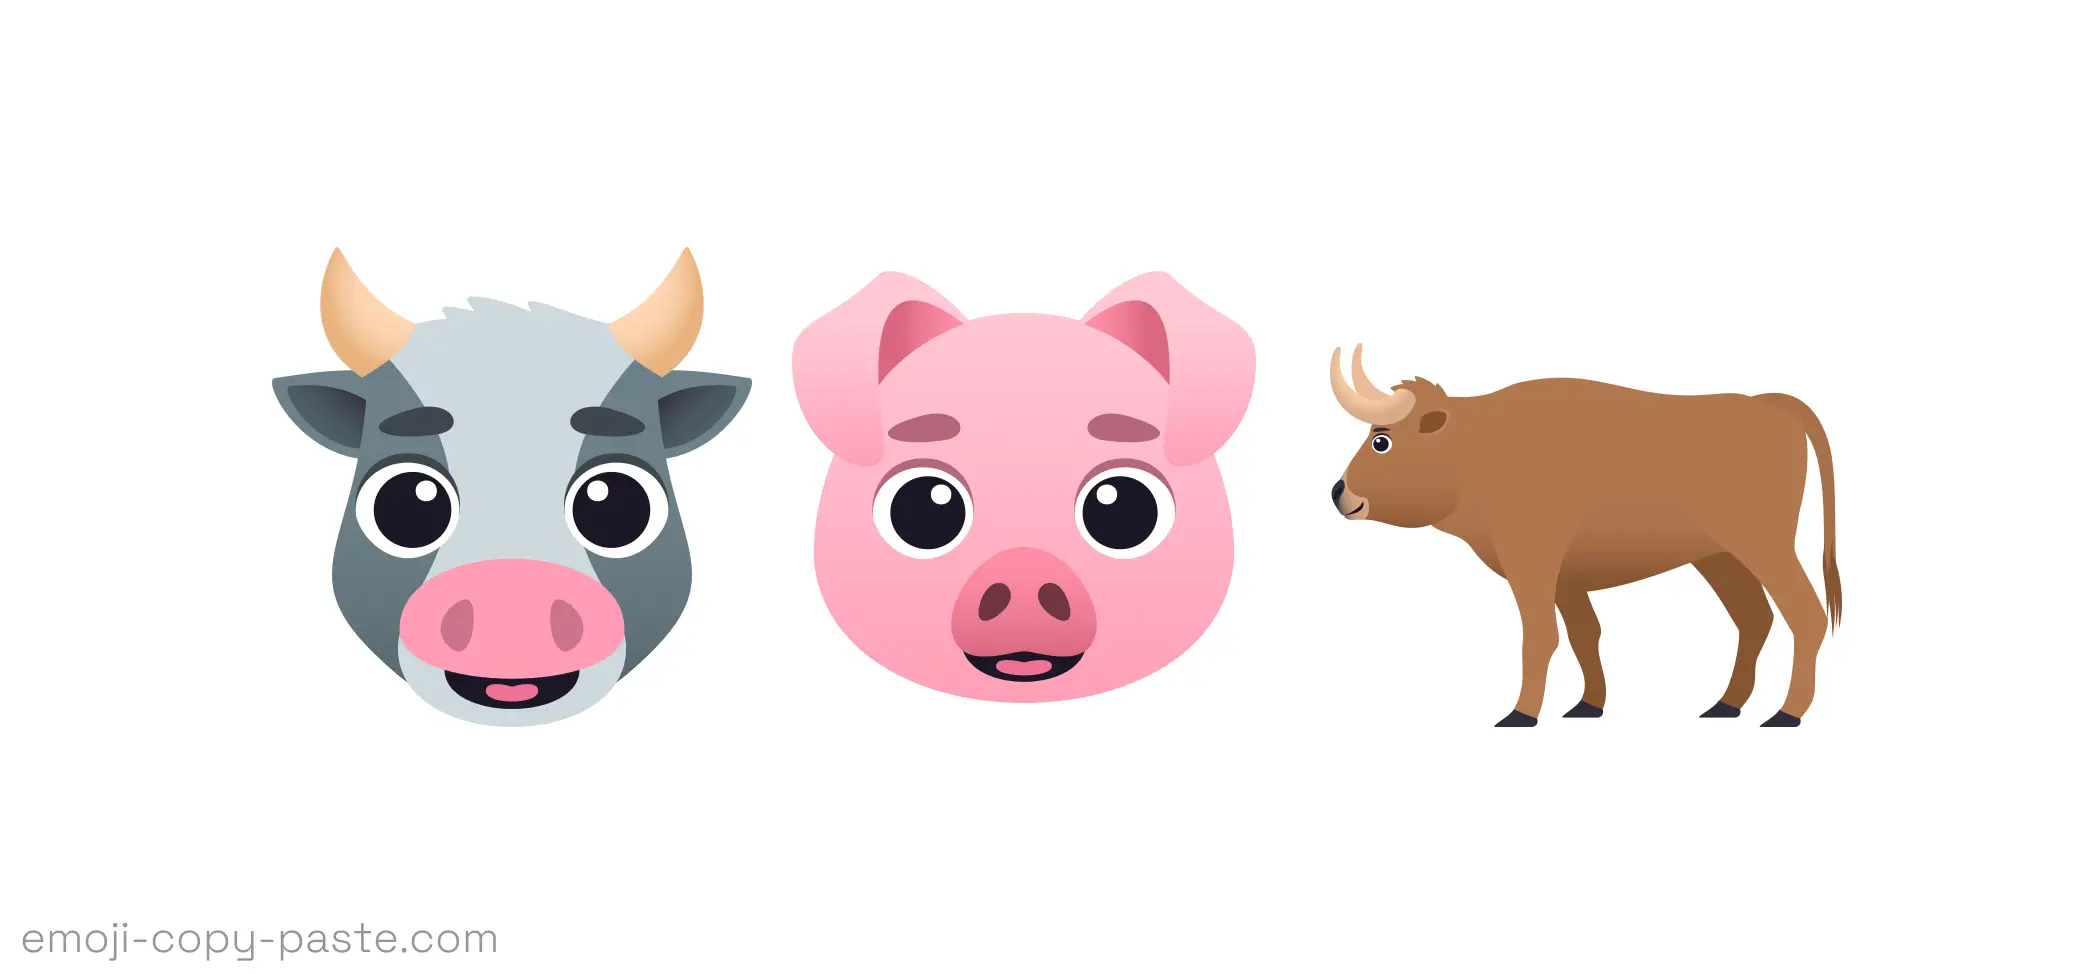 Copy Animals Emojis 🐮🐷🐂 (emoji 👉 copy 👉 paste)